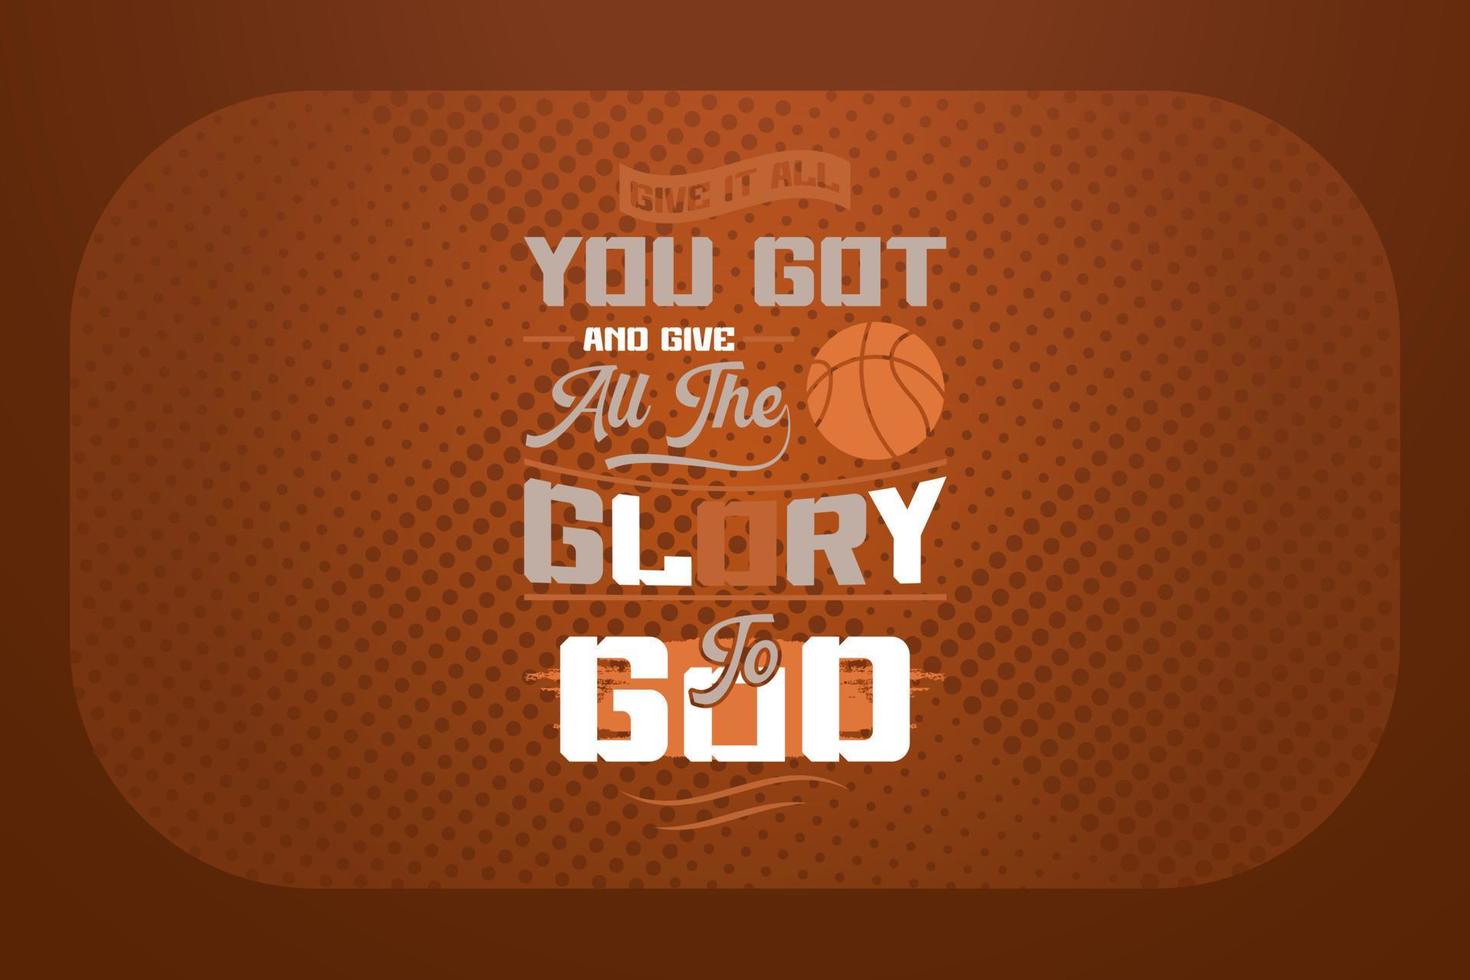 basketboll t-shirt design ge den Allt du fick och ge Allt de ära till Gud vektor